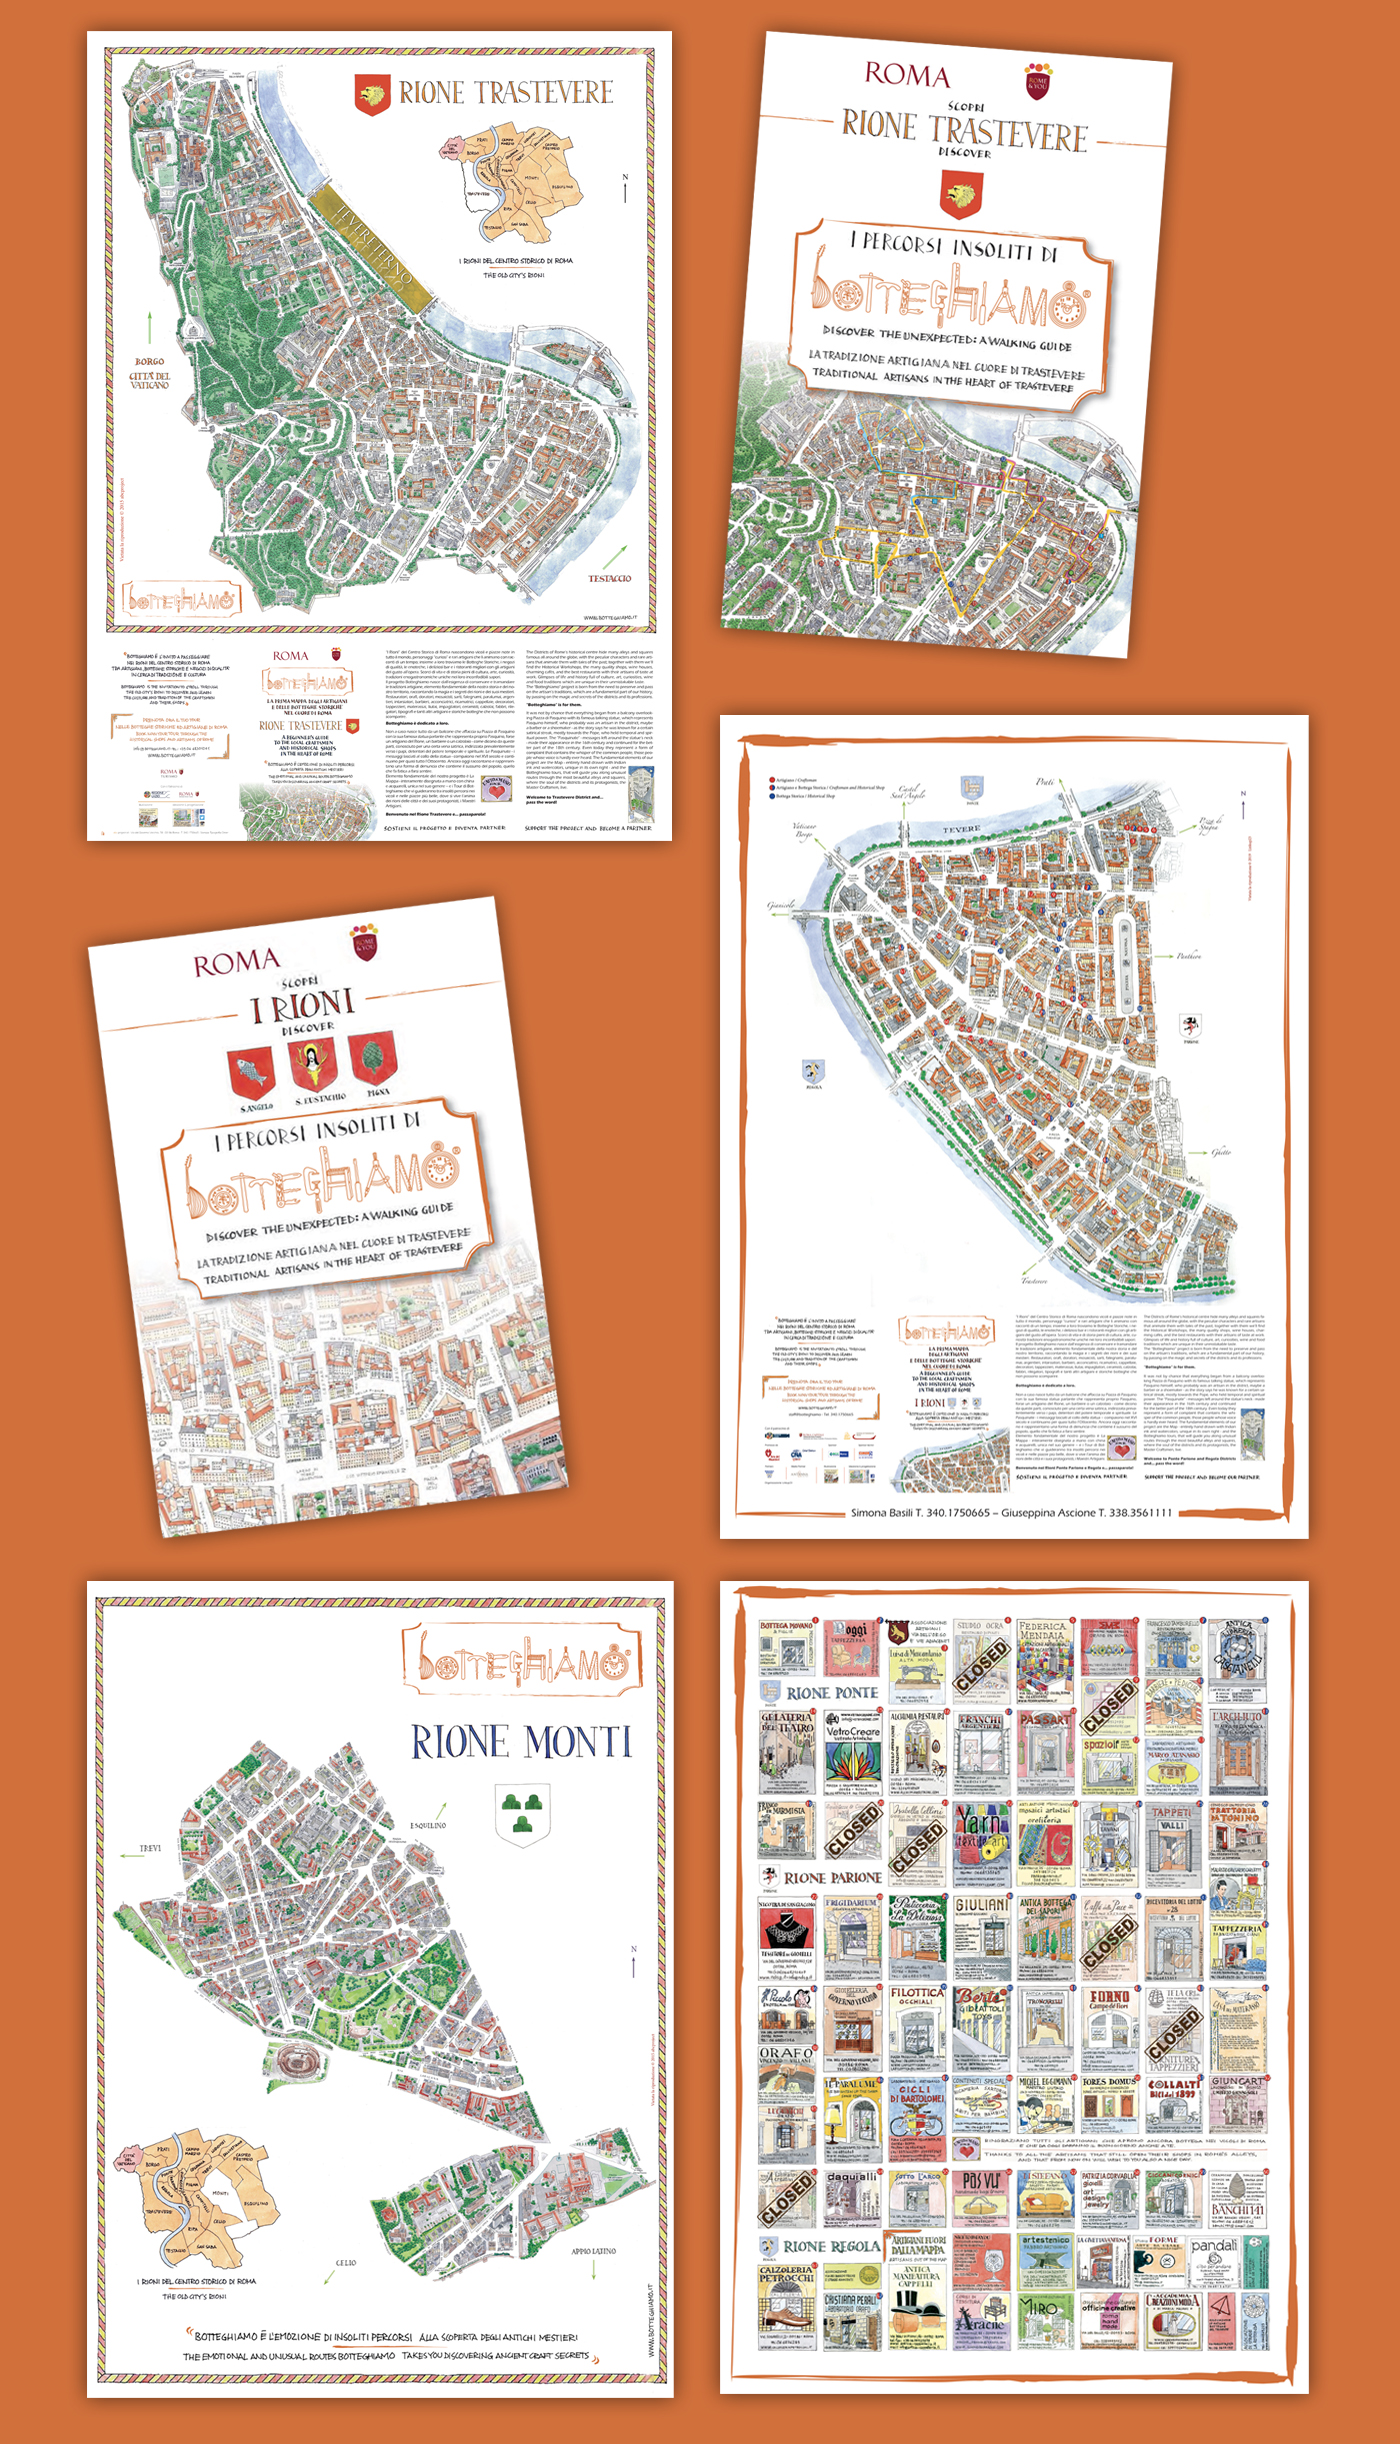 Mappe e brochure Botteghiamo